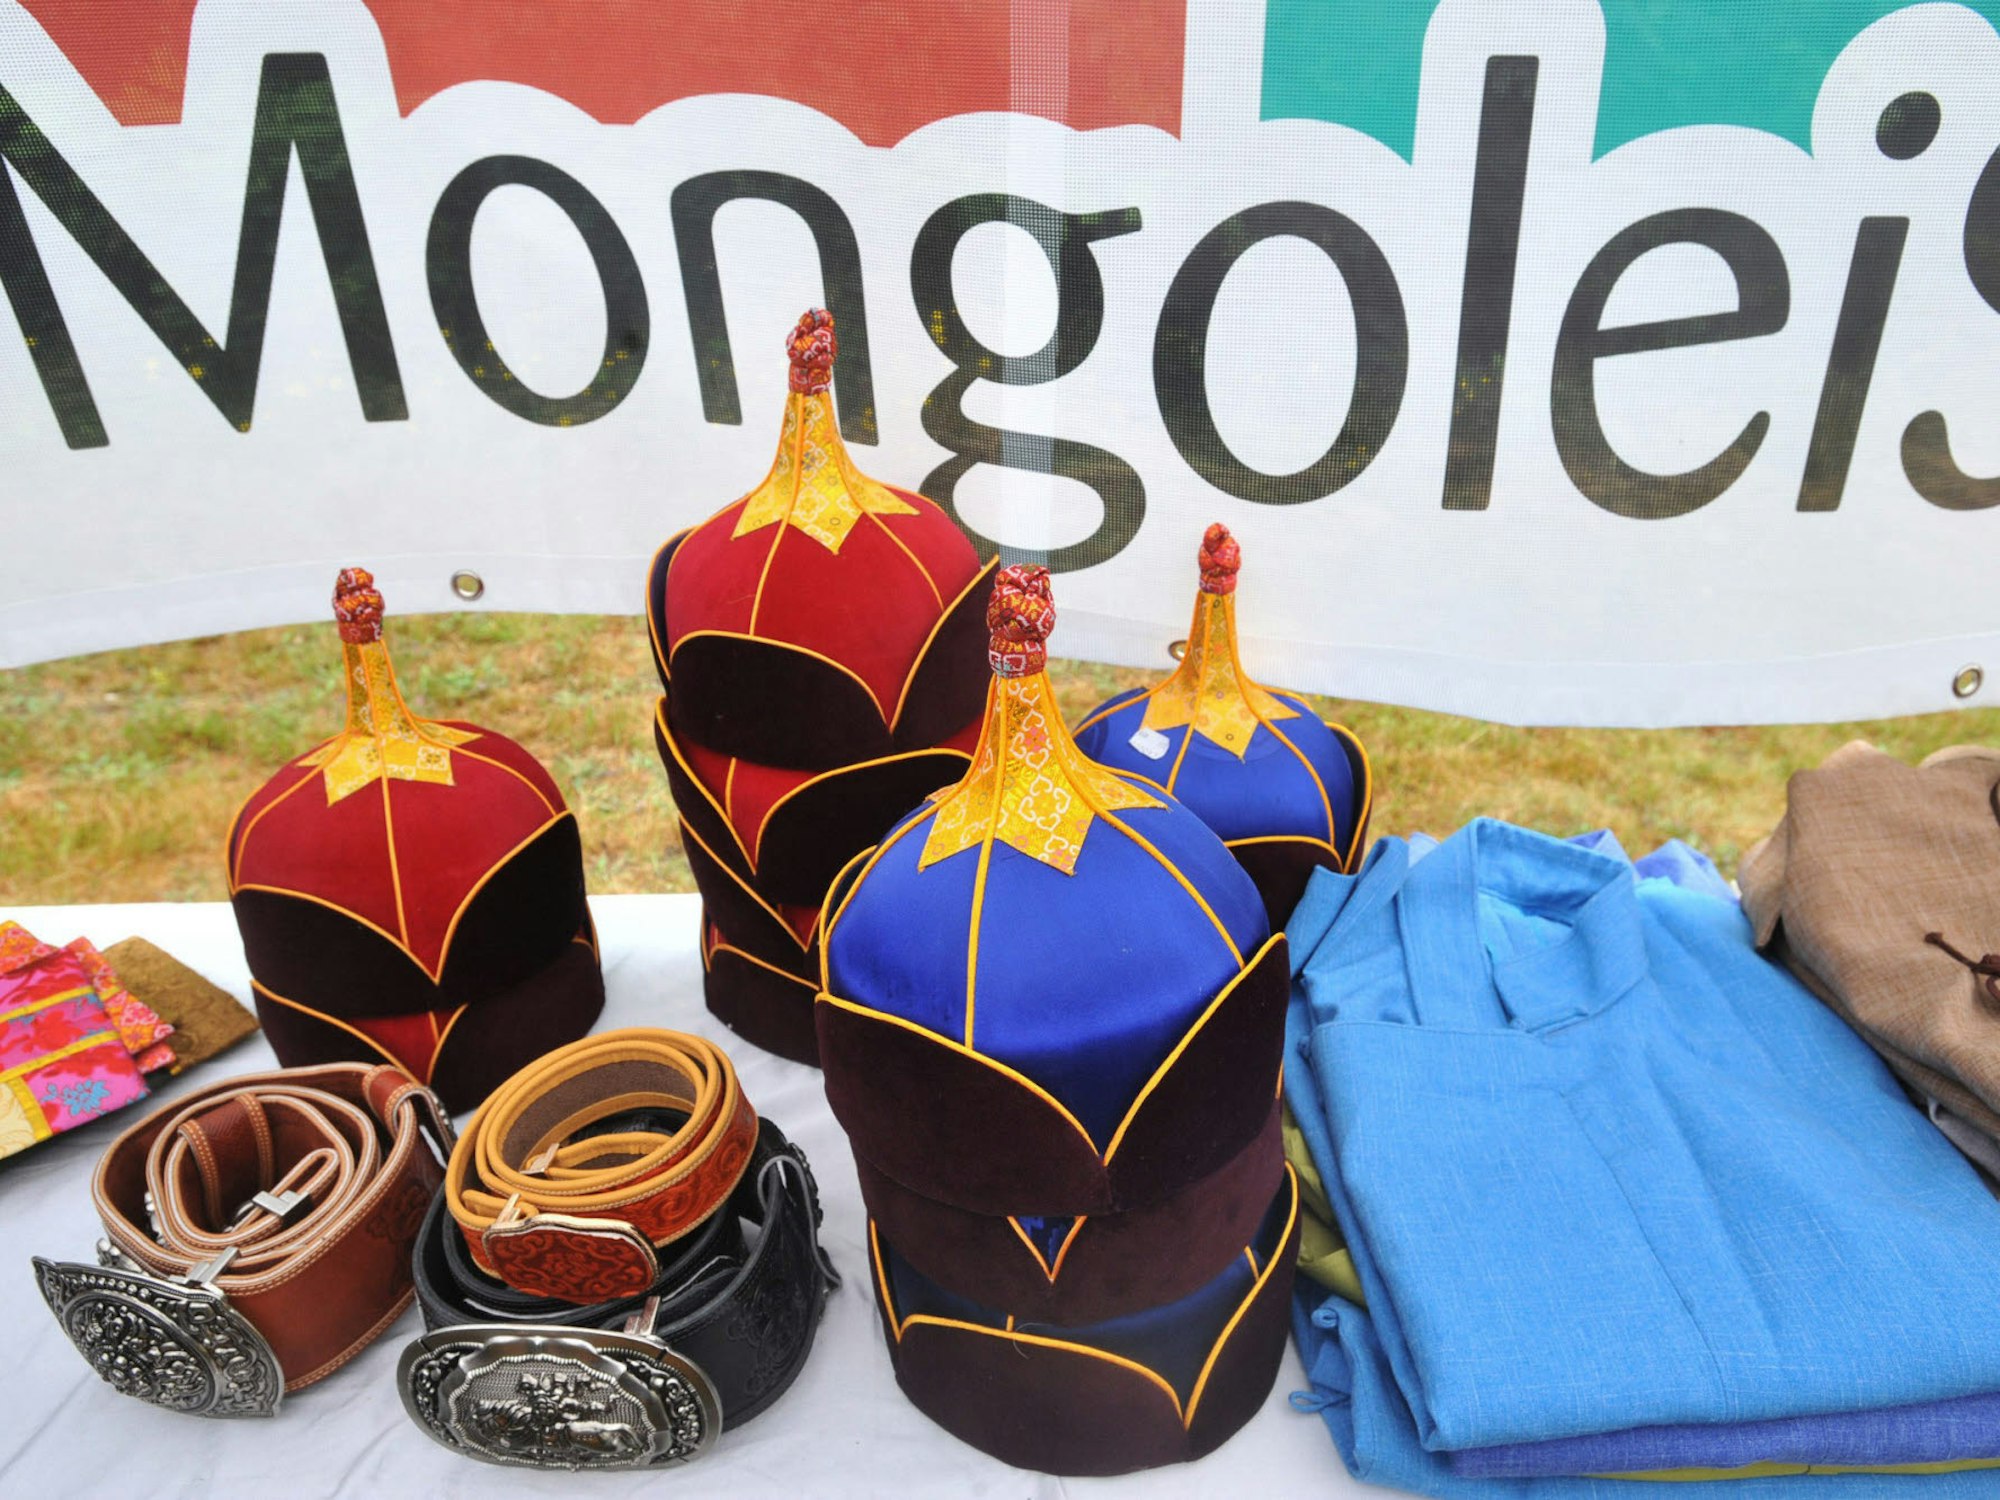 Die Kleider eines Landes: An manchen Zeltständen konnten die Festbesucher mongolische Trachten kaufen.